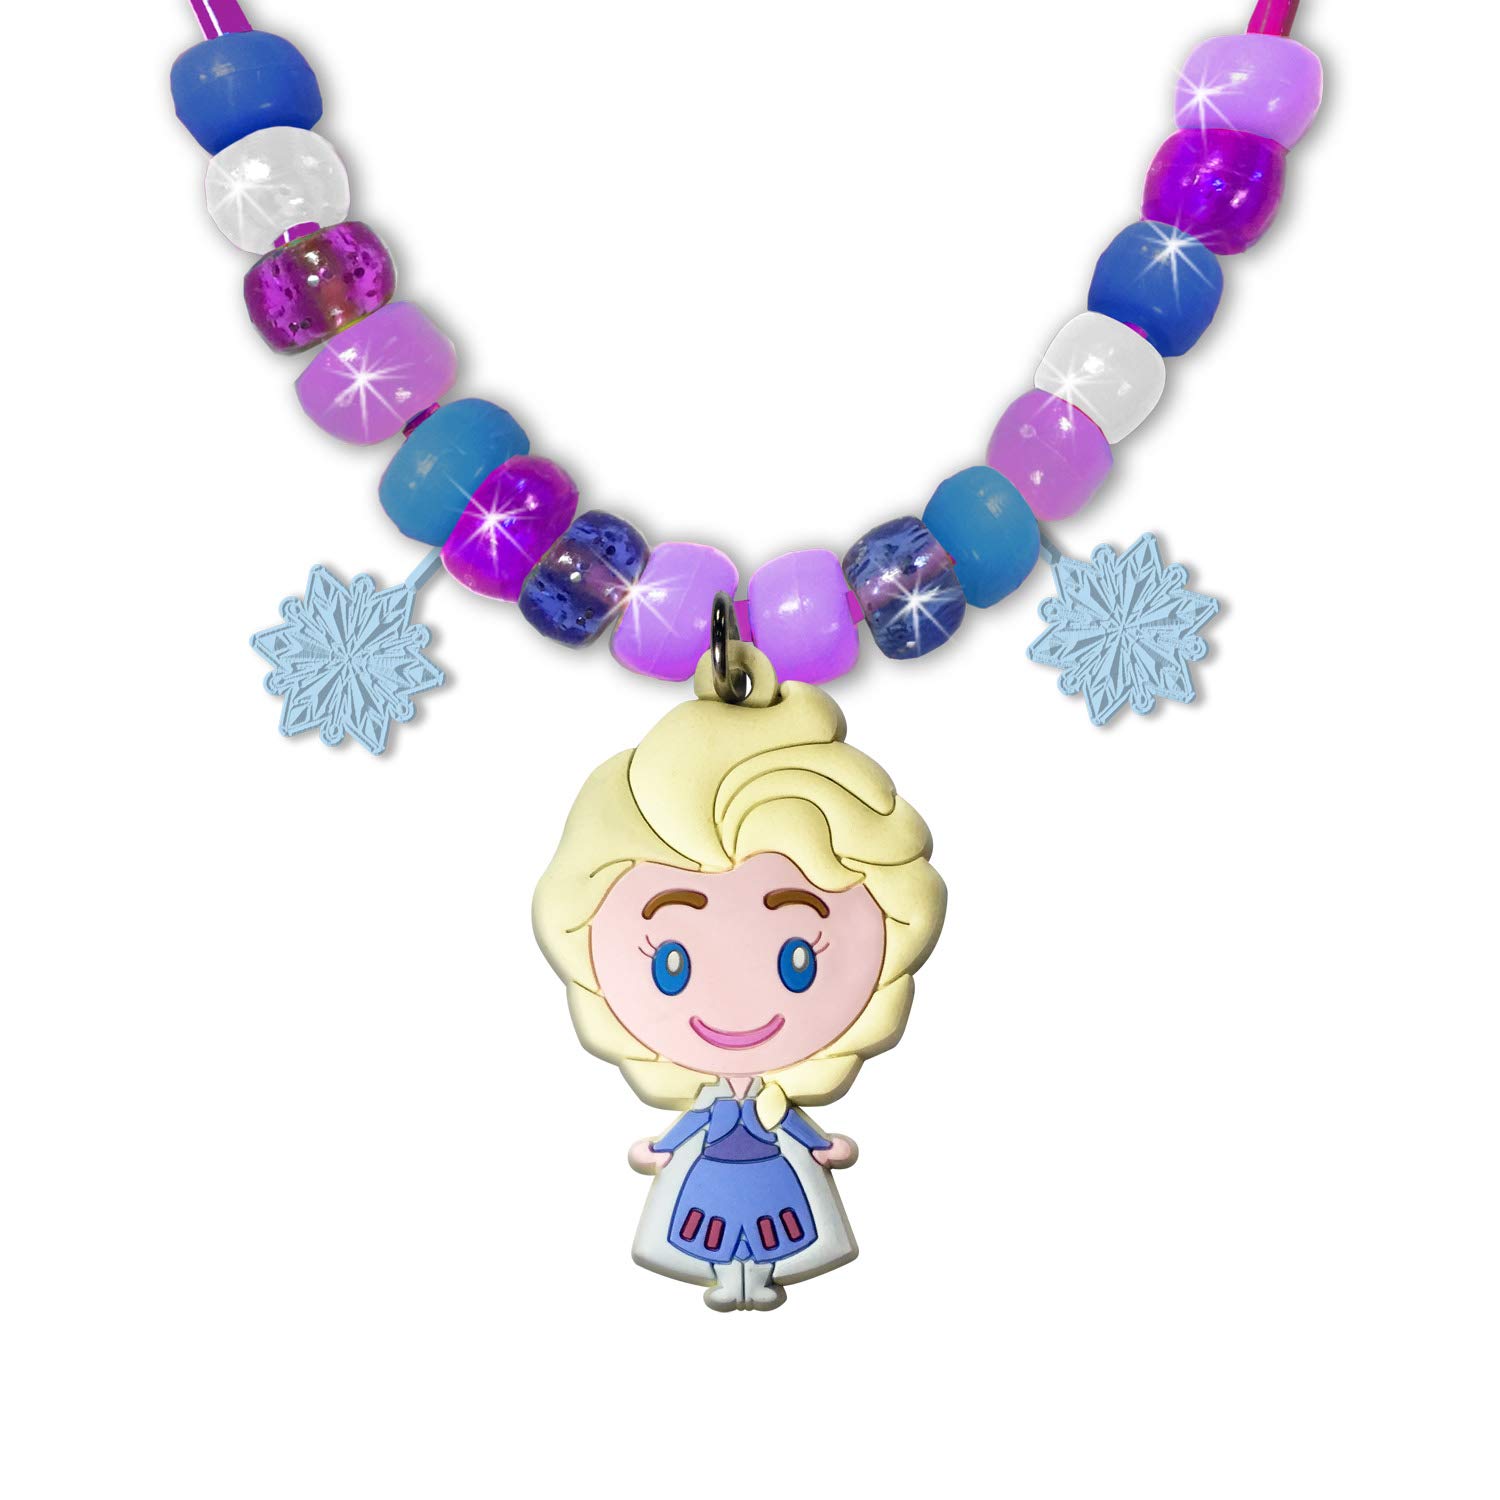 Tara Toys - Frozen 2: Necklace Activity Set (Disney)